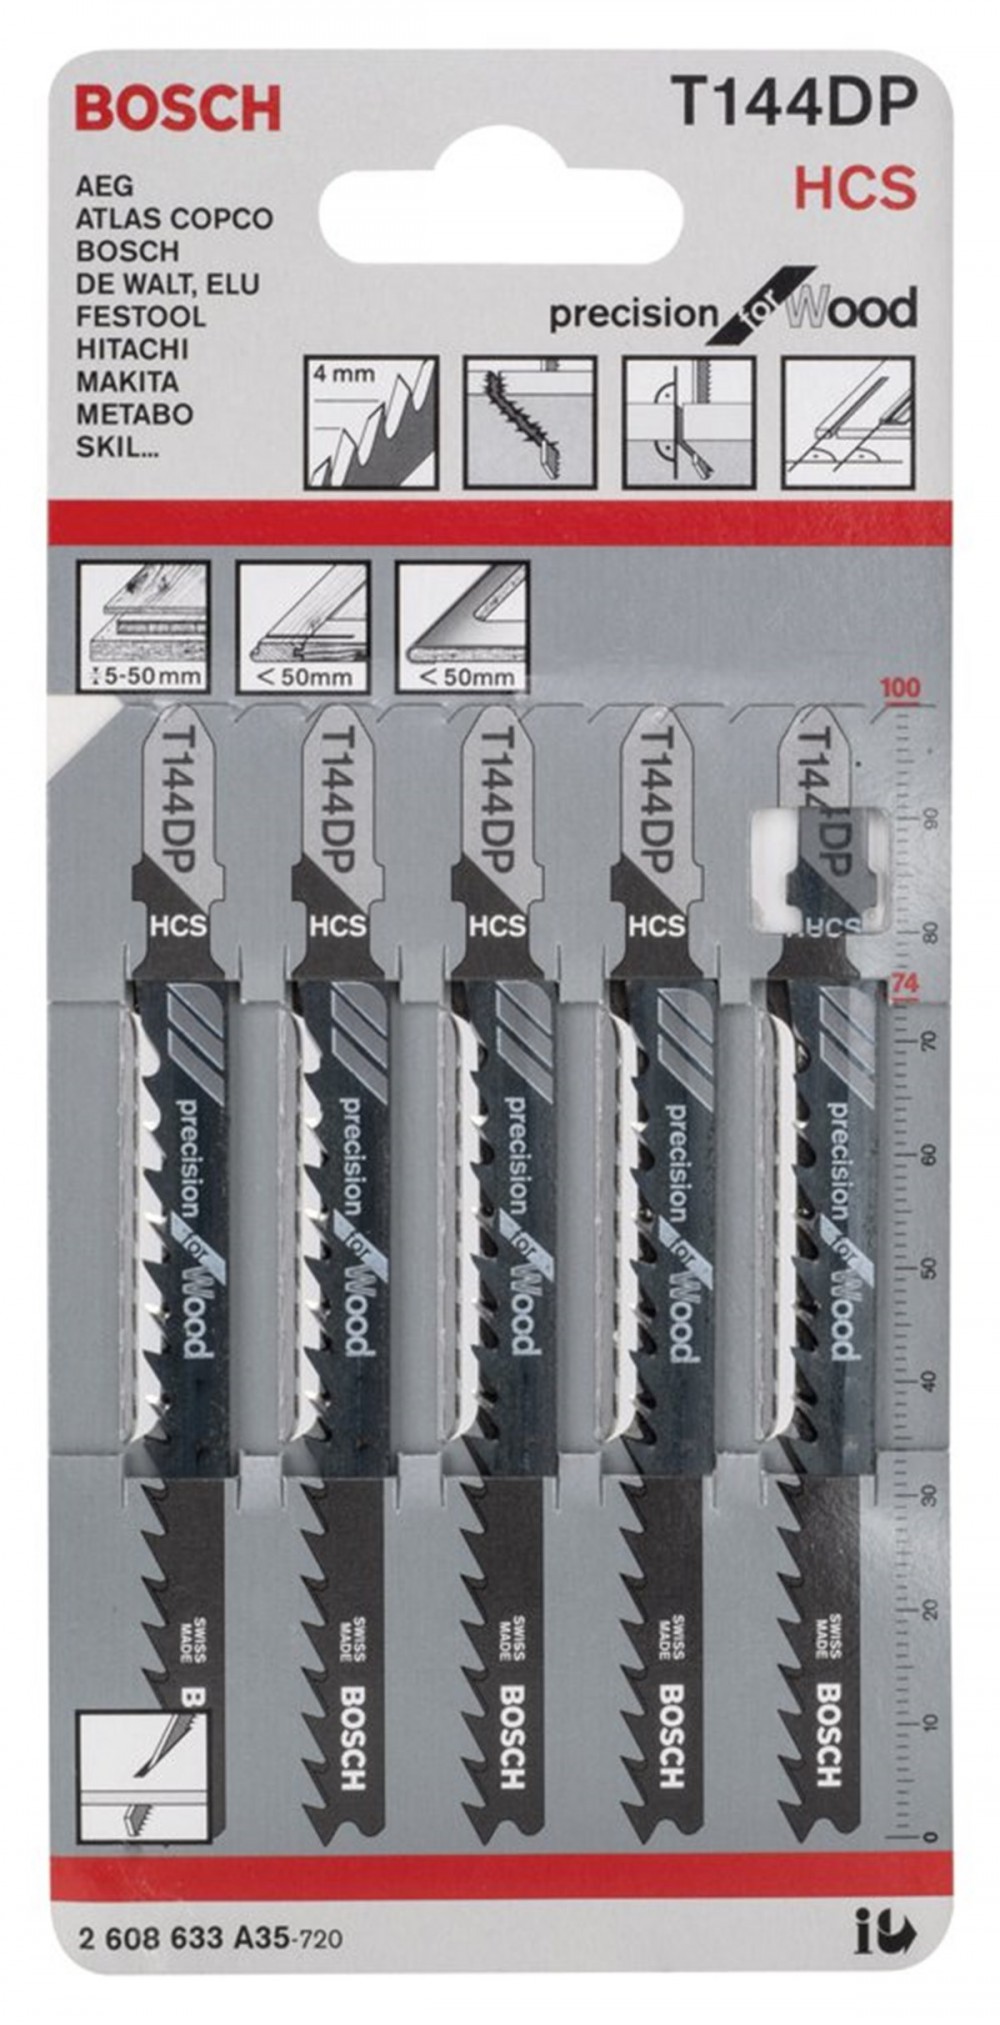 Bosch - Hassas Kesim Serisi Ahşap İçin T 144 Dp Dekupaj Testeresi Bıçağı - 5'Li Paket